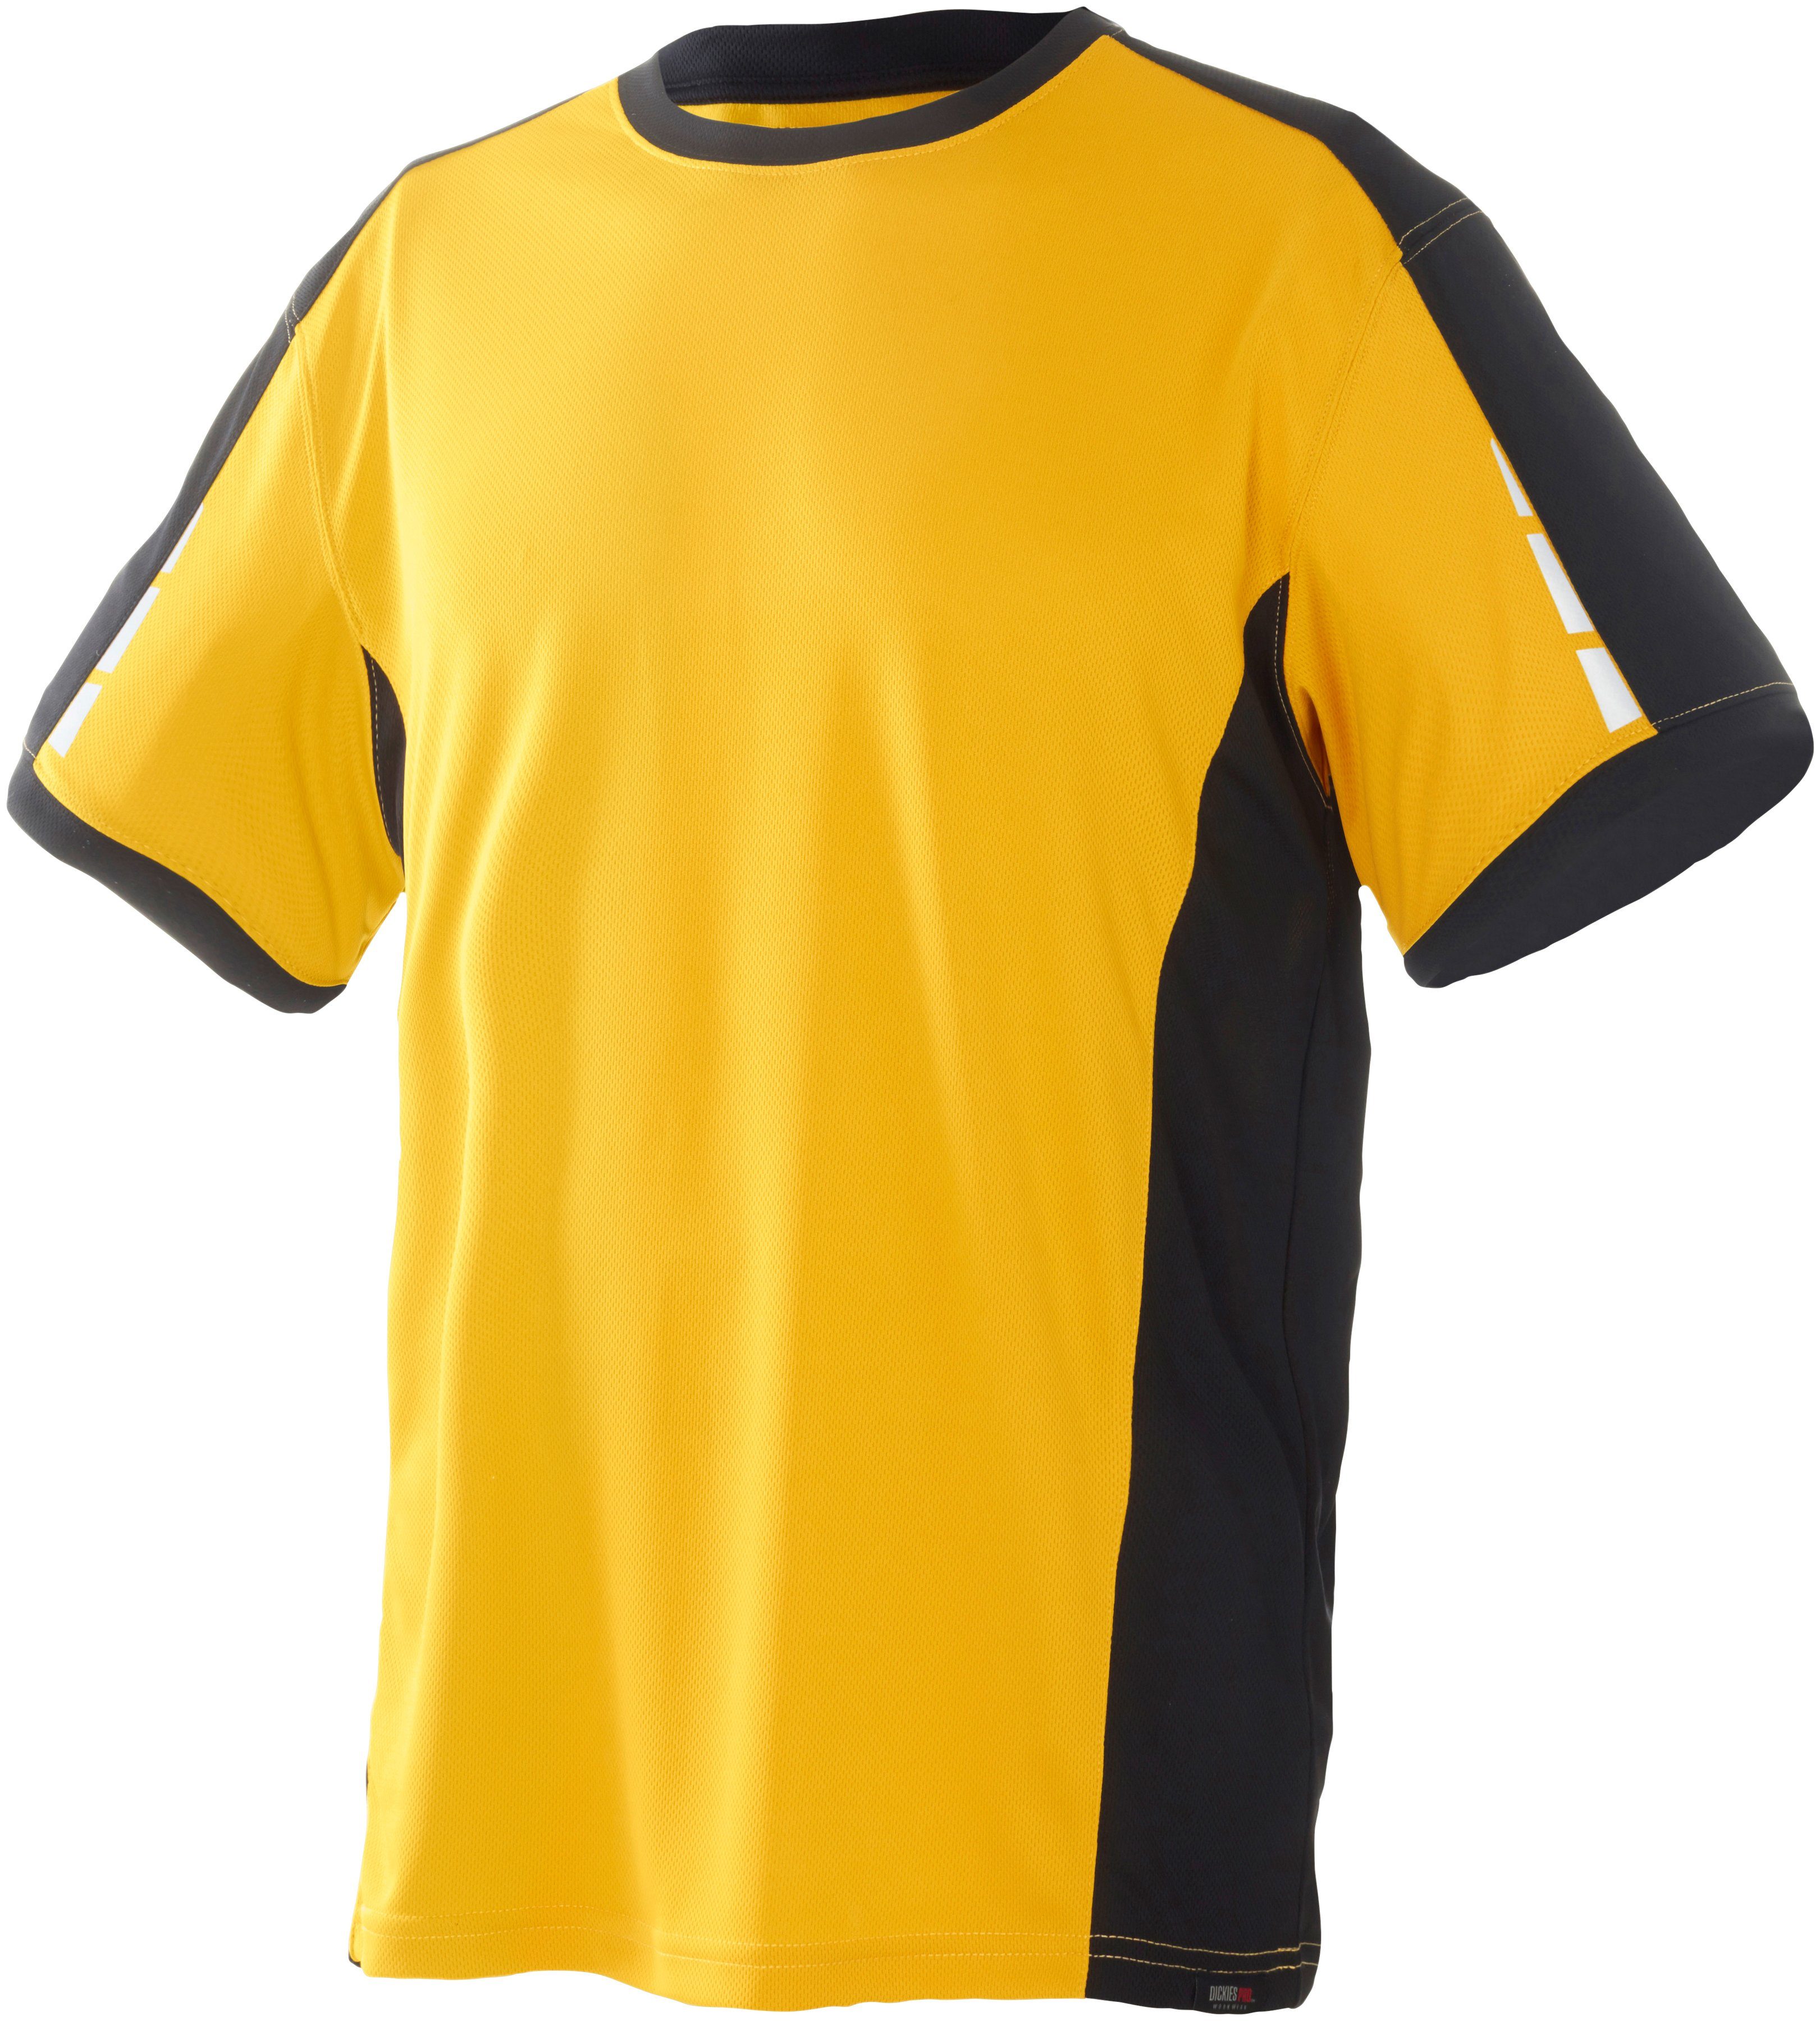 mit an reflektierenden Ärmeln Dickies den T-Shirt gelb-schwarz Details Pro